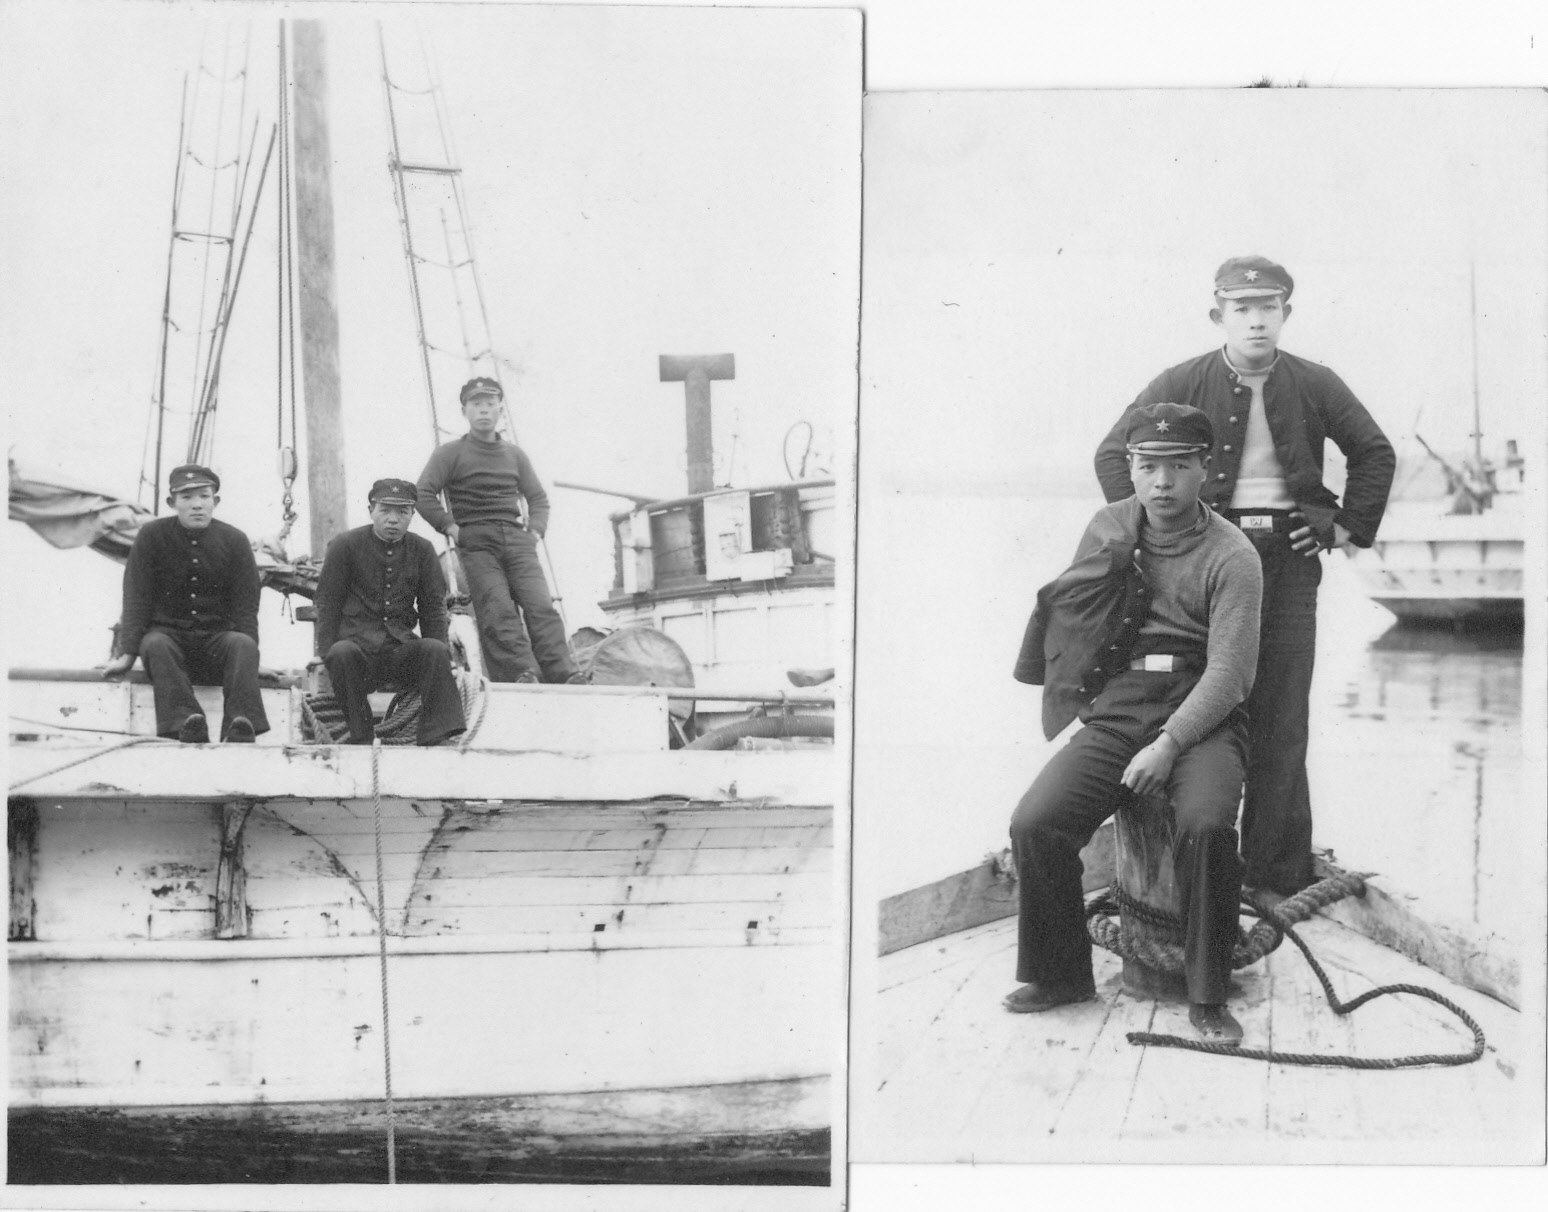 1940年当時の焼玉エンジン搭載の木造かつを・まぐろ漁船、左の写真中央と右の写真手前は二川清18才ころの写真　この写真が私社の現存する最古の漁船の写真です。撮影場所は那珂川の那珂湊大橋の600メートル下流　稲葉屋菓子店(ひたちなか市栄町)付近です。